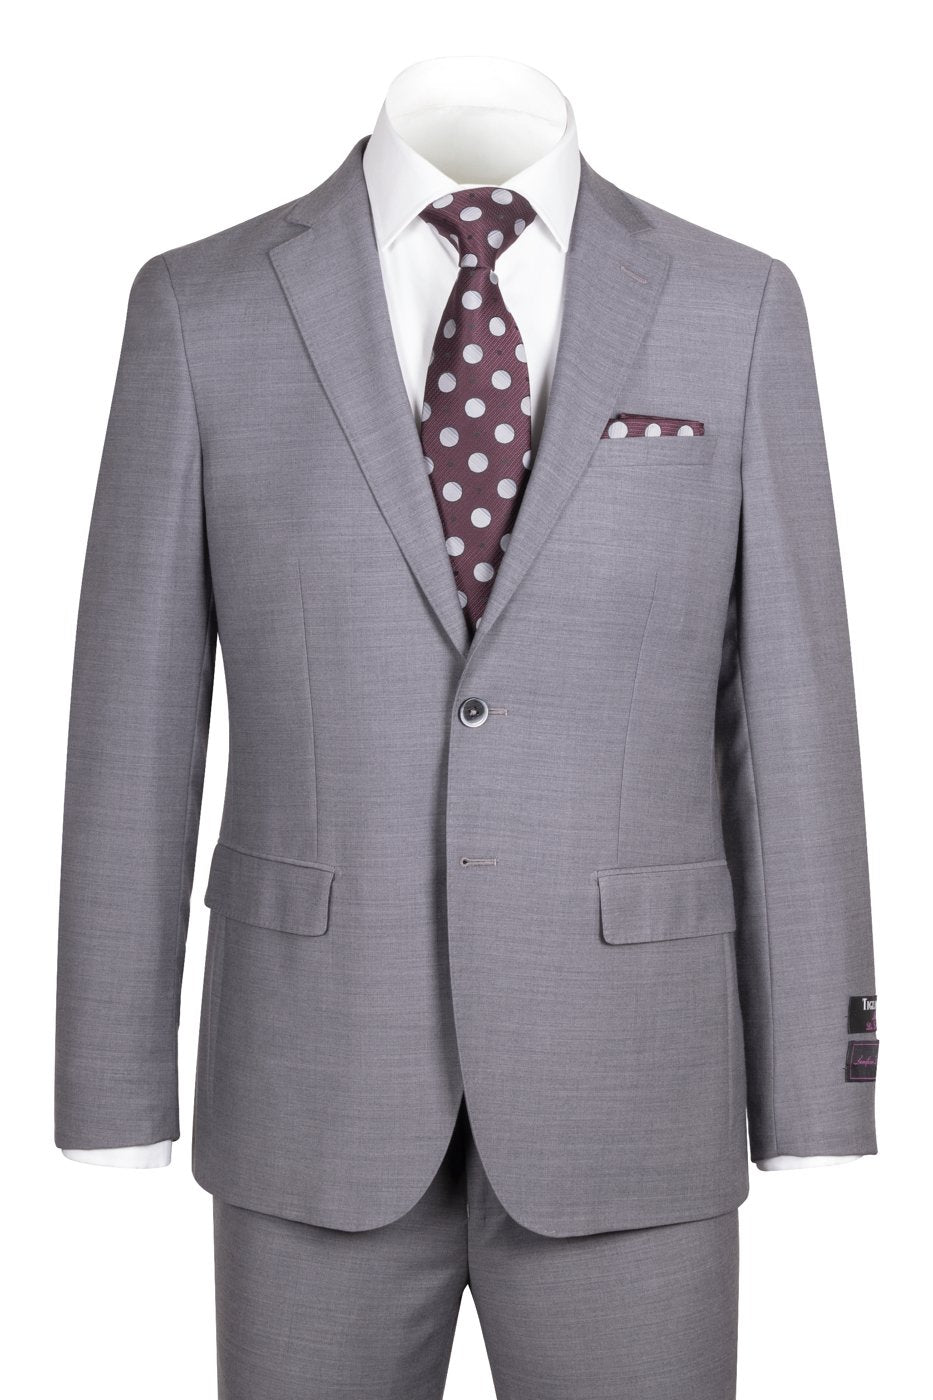 Porto Gray, Slim Fit, Pure Wool Suit by Tiglio Luxe E09063/26